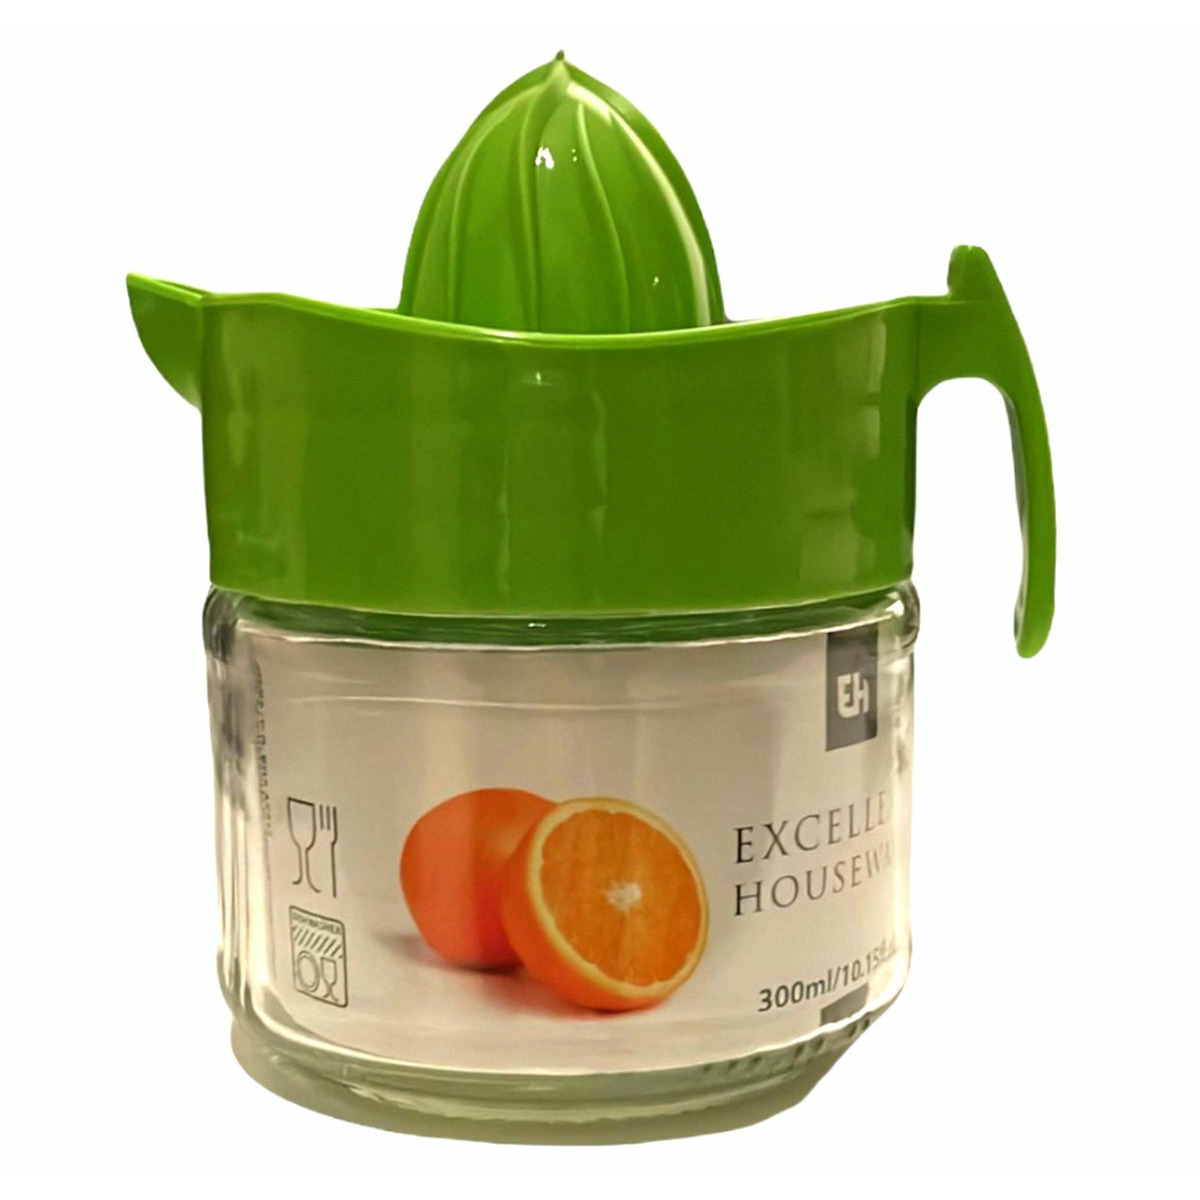 Excellent Houseware Sinaasappelpers-citruspers Mini Handmatig kunststof 15 x 12 cm groen